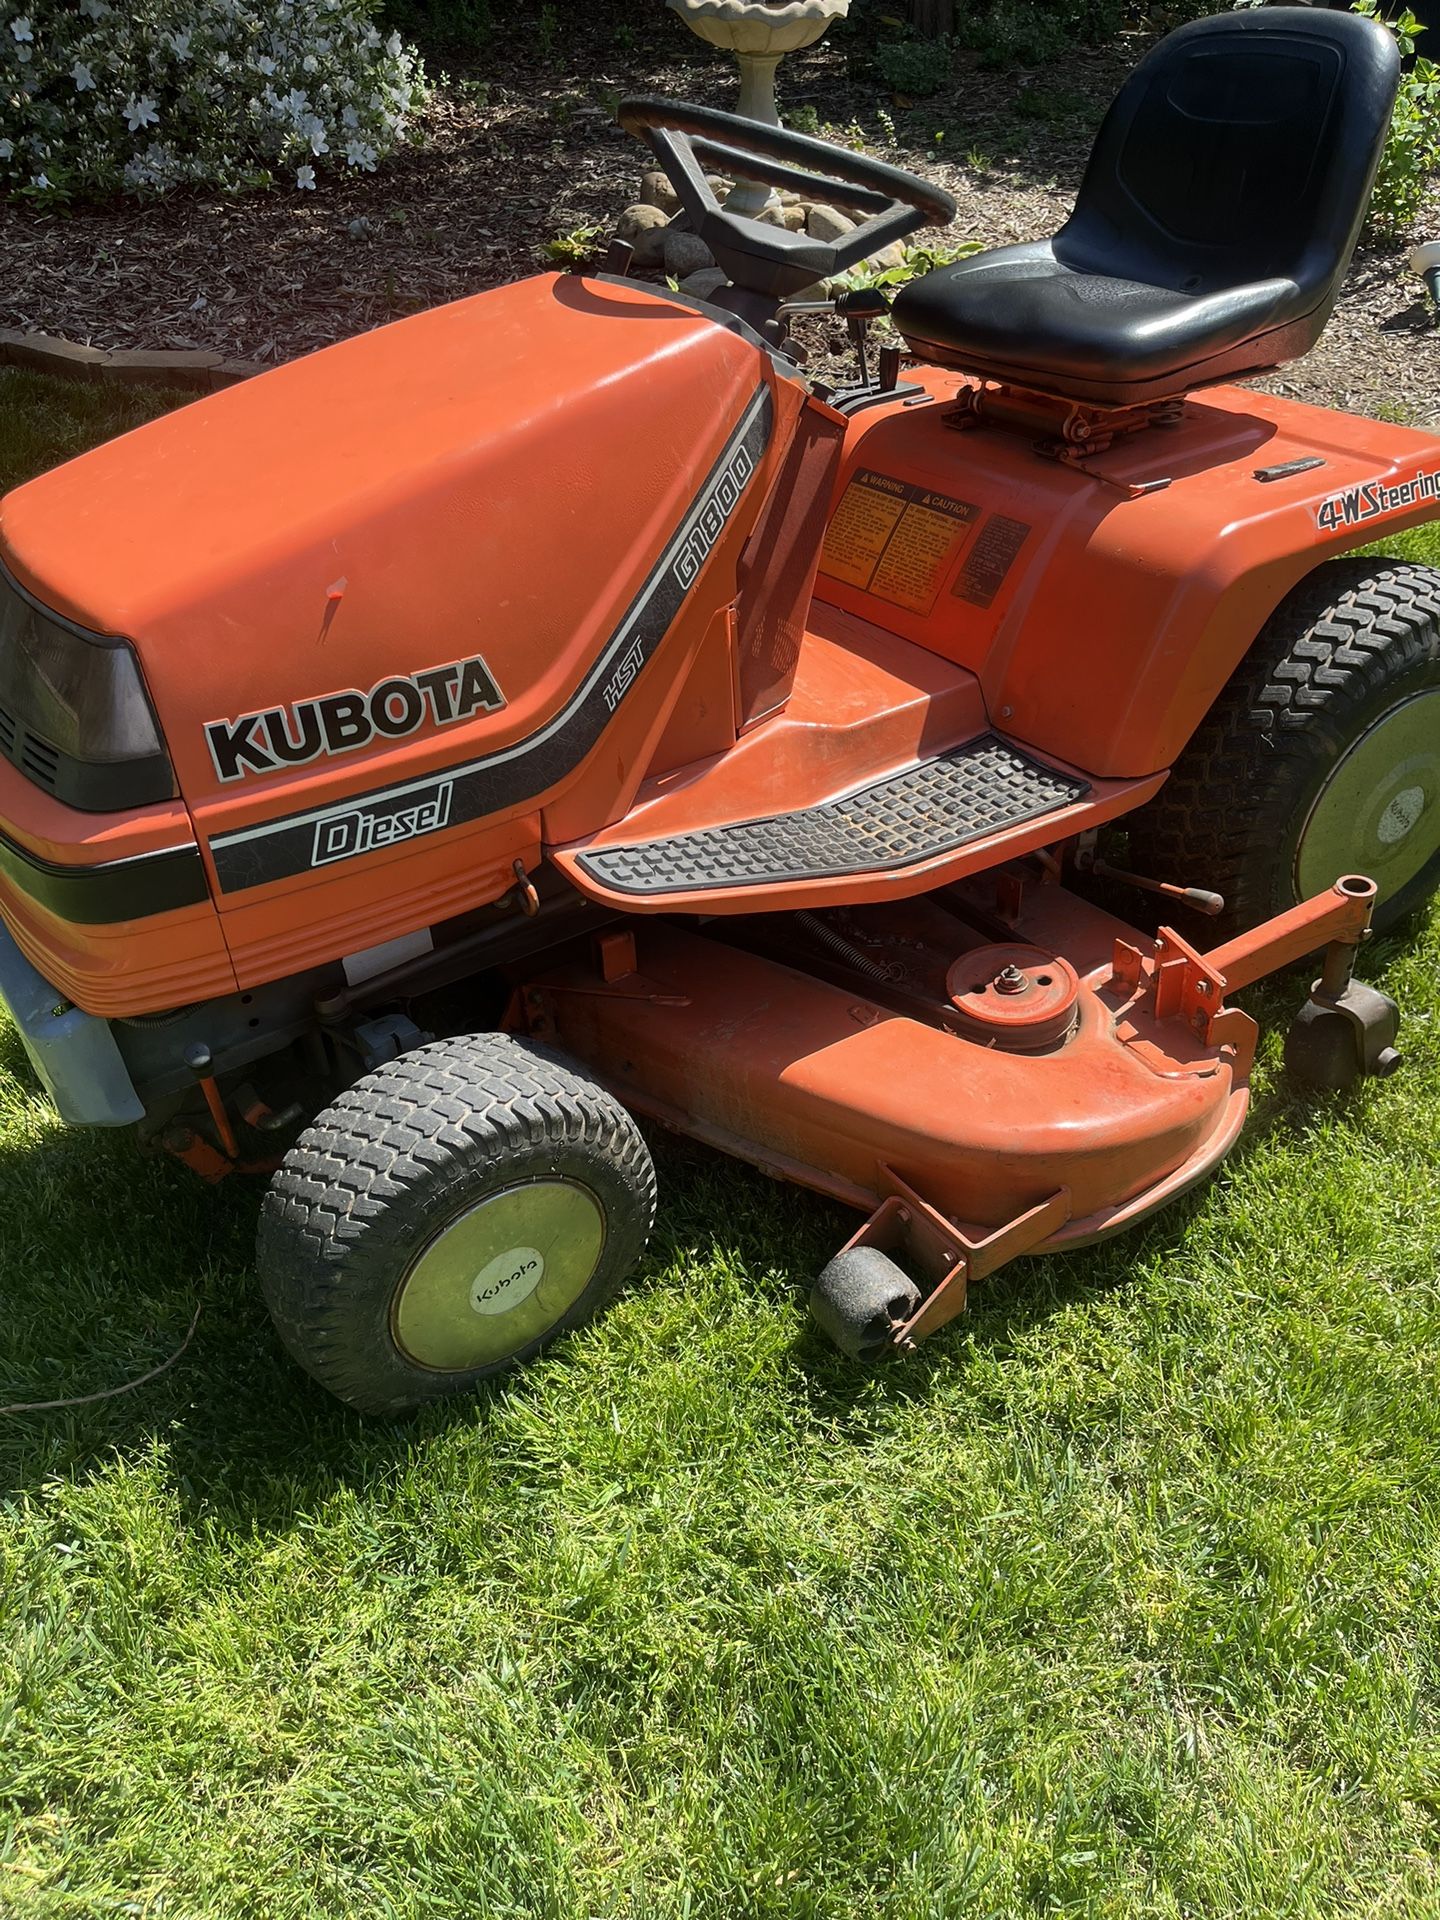 Kubota 54” G1800 Tractor